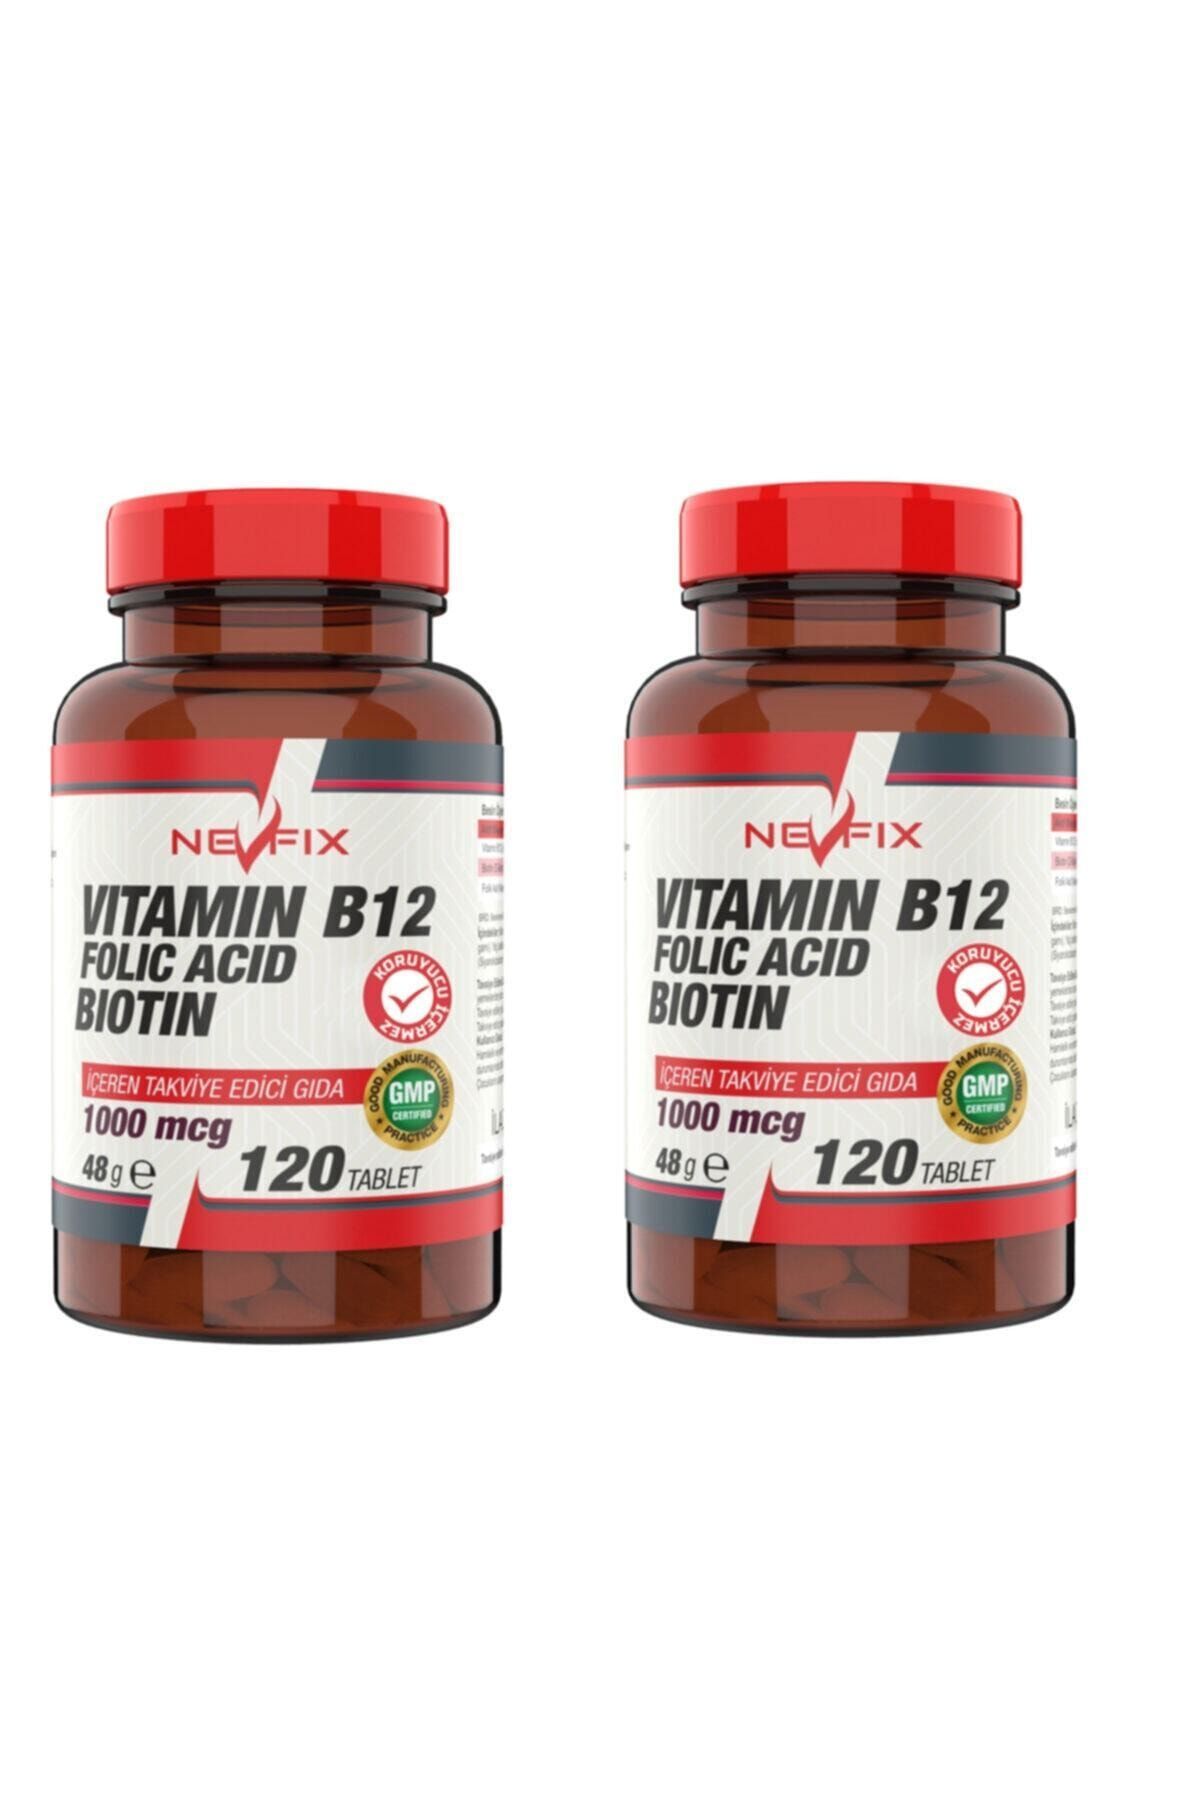 Nevfix Vitamin B12 Folic Acid Biotin 120 Tablet X 2 Kutu 240 Tablet